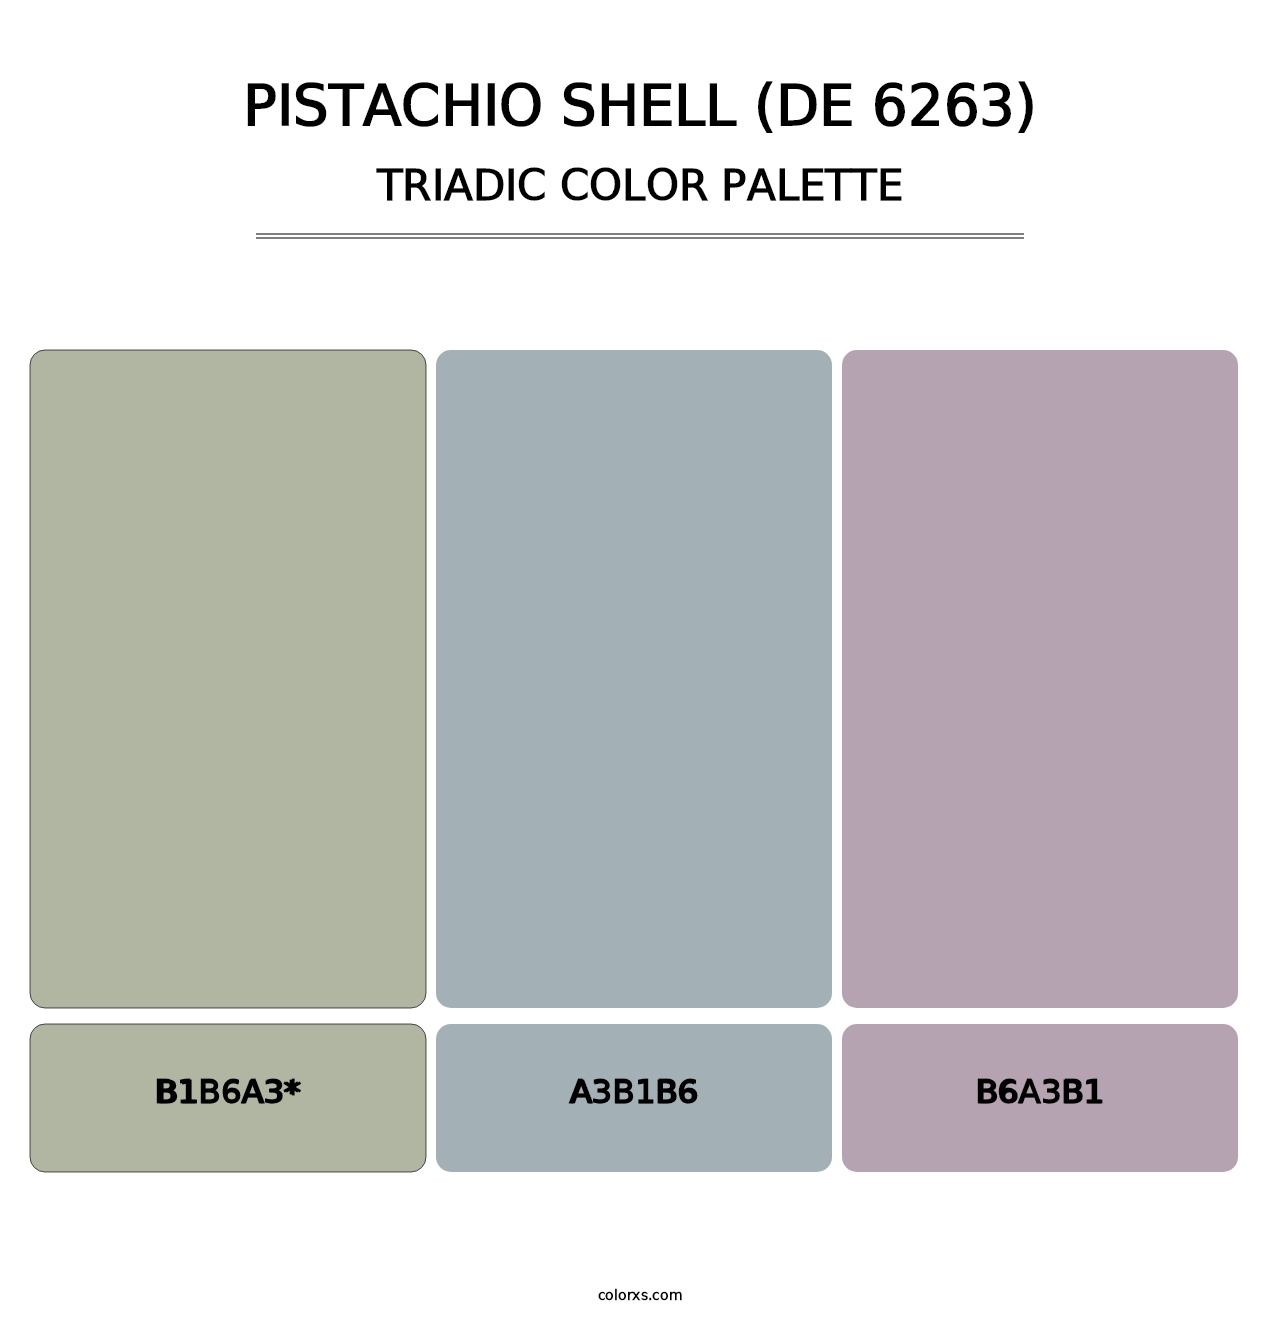 Pistachio Shell (DE 6263) - Triadic Color Palette